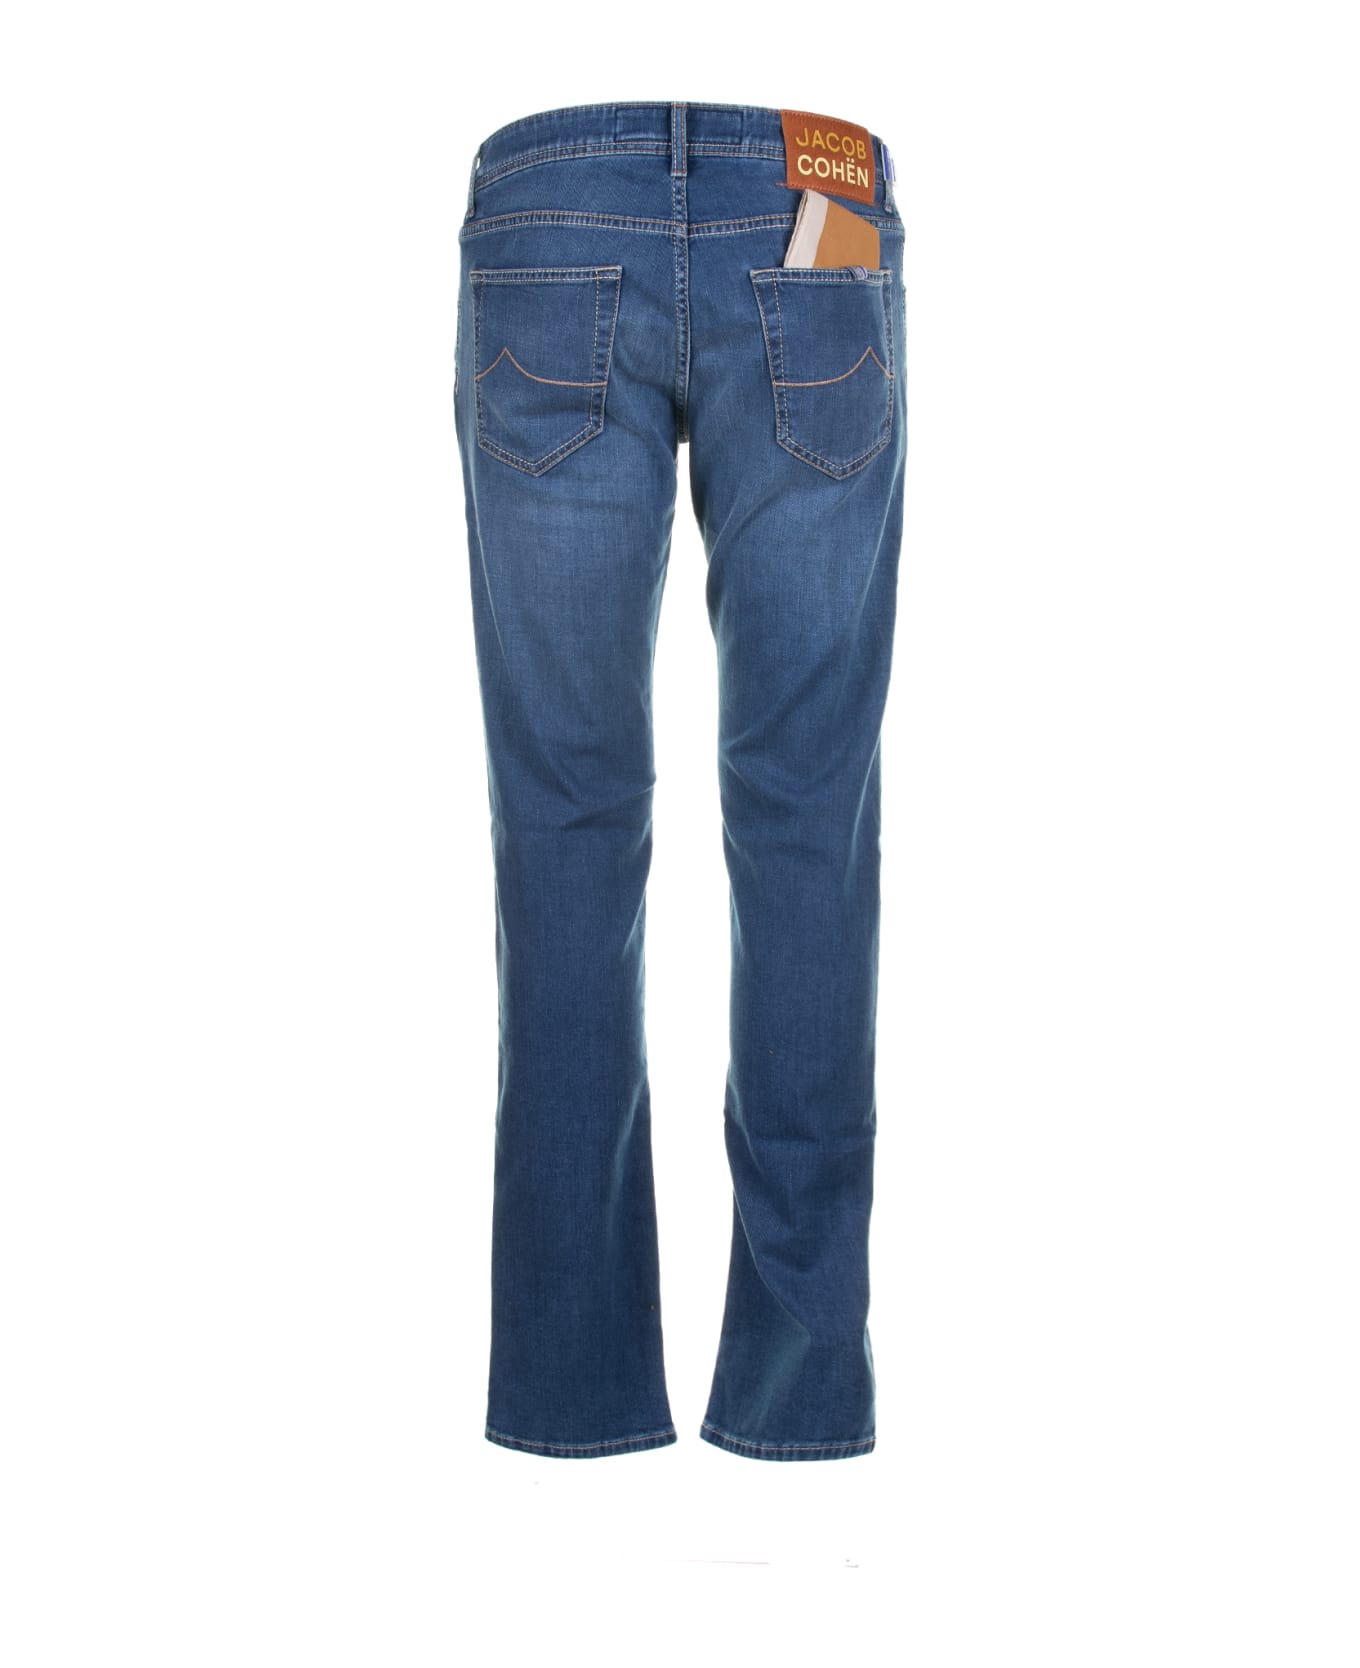 Jacob Cohen Jeans In Light Blue Denim - BLU INTERMEDIO